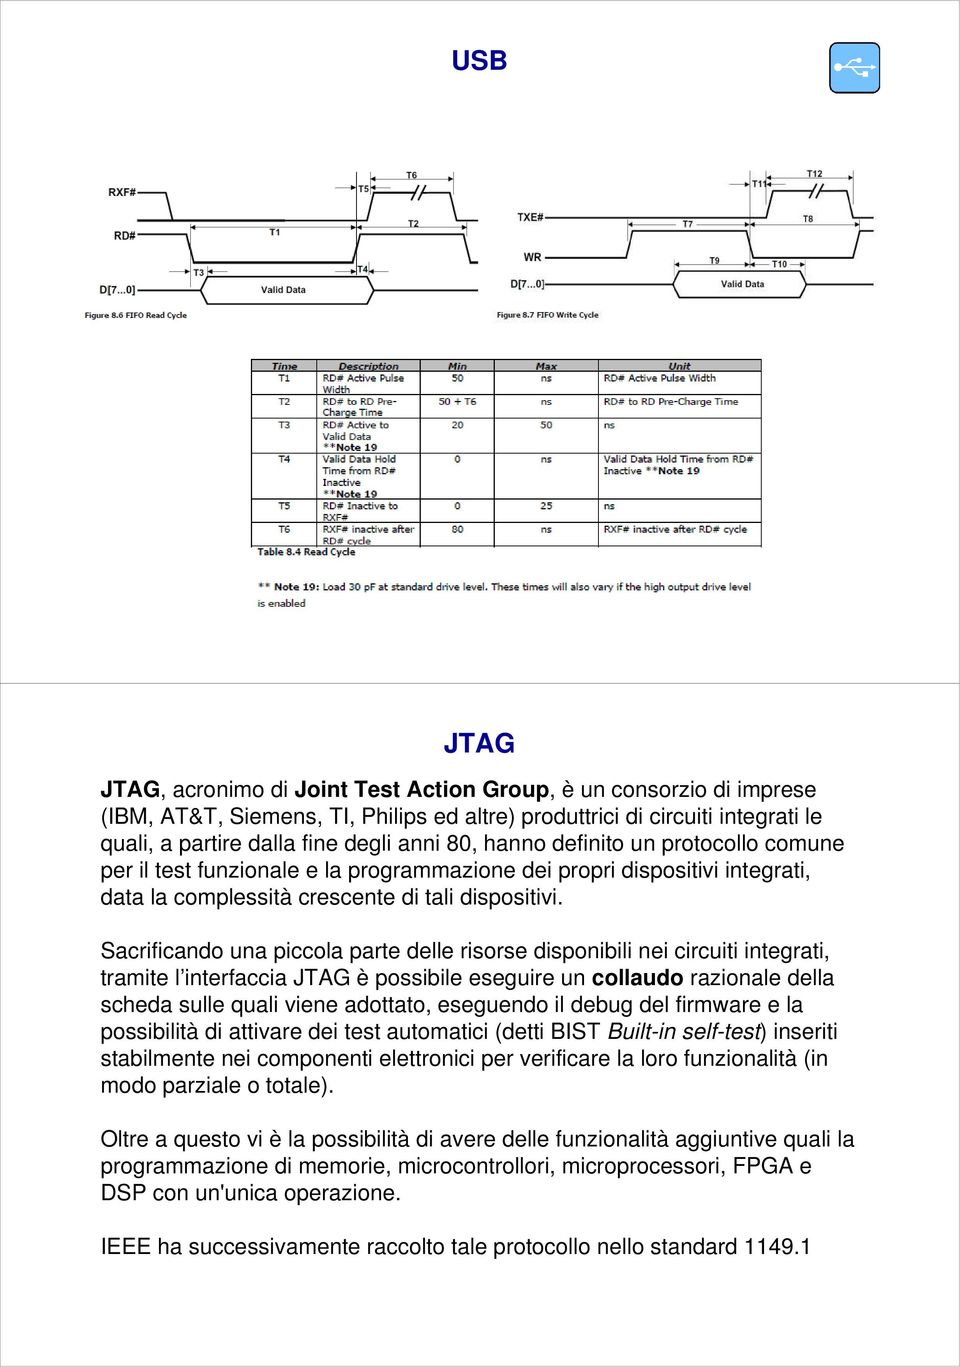 Sacrificando una piccola parte delle risorse disponibili nei circuiti integrati, tramite l interfaccia JTAG è possibile eseguire un collaudo razionale della scheda sulle quali viene adottato,